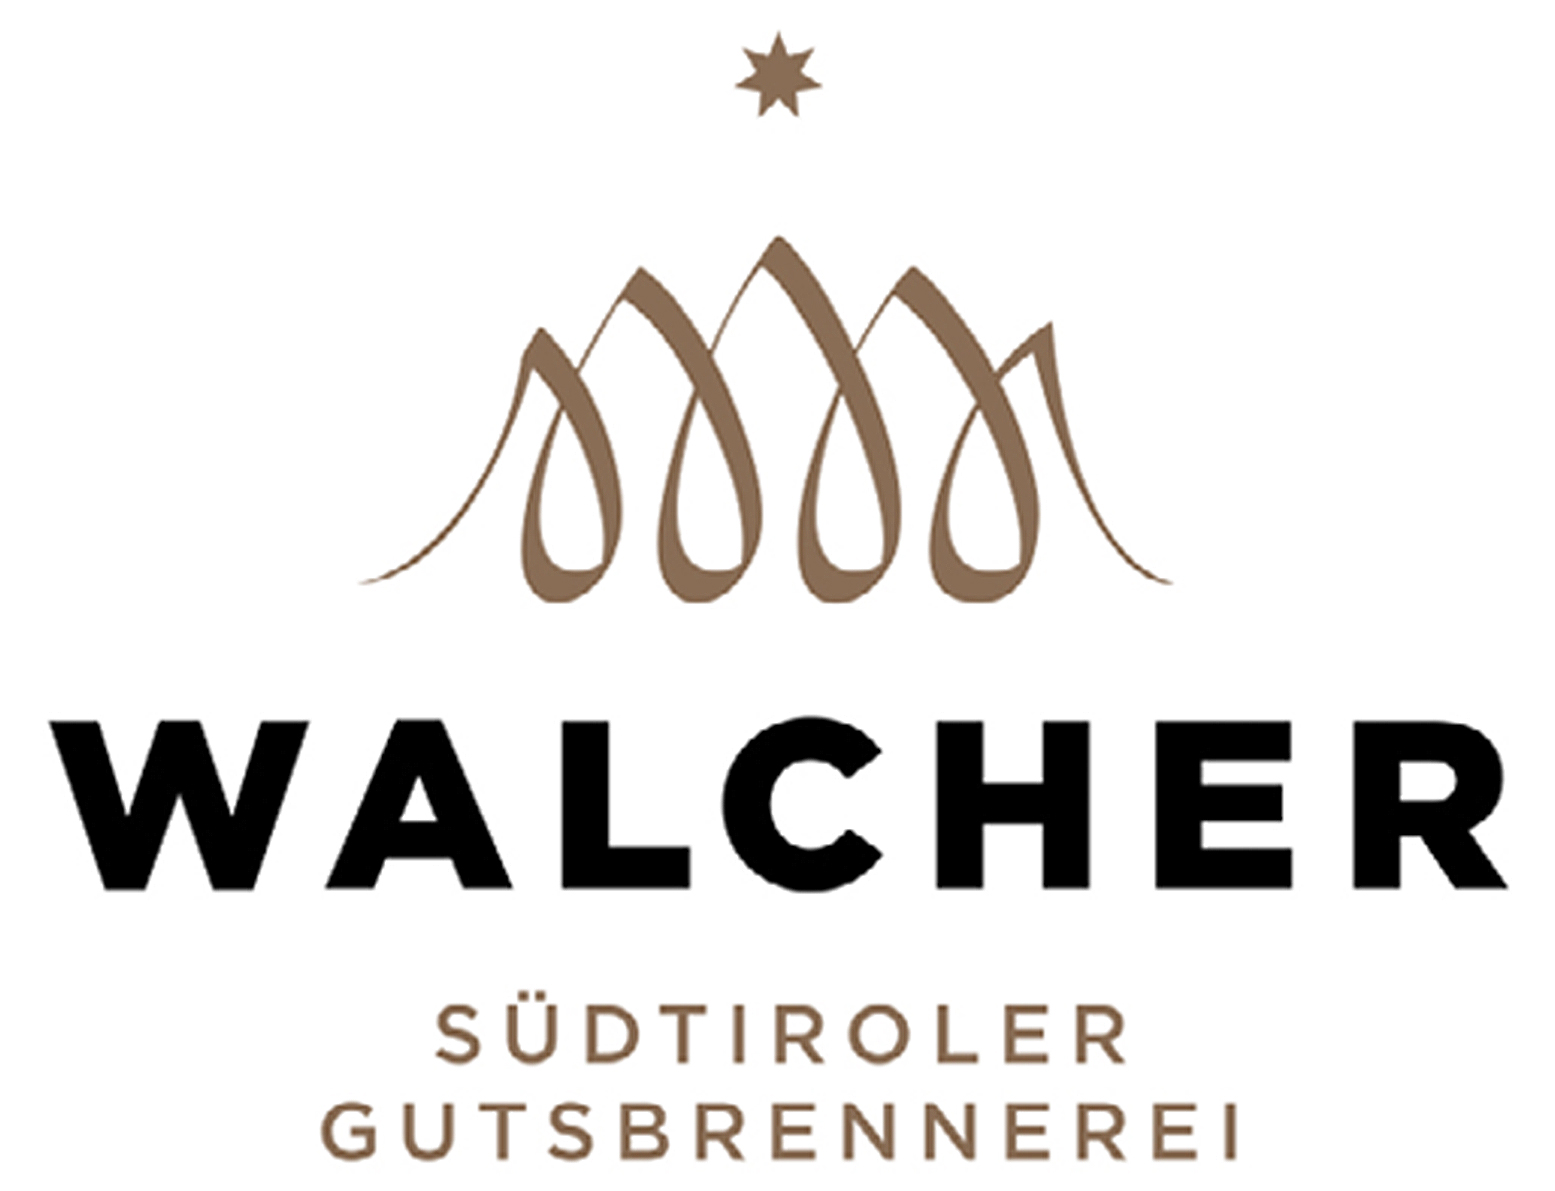 Gutsbrennerei Walcher